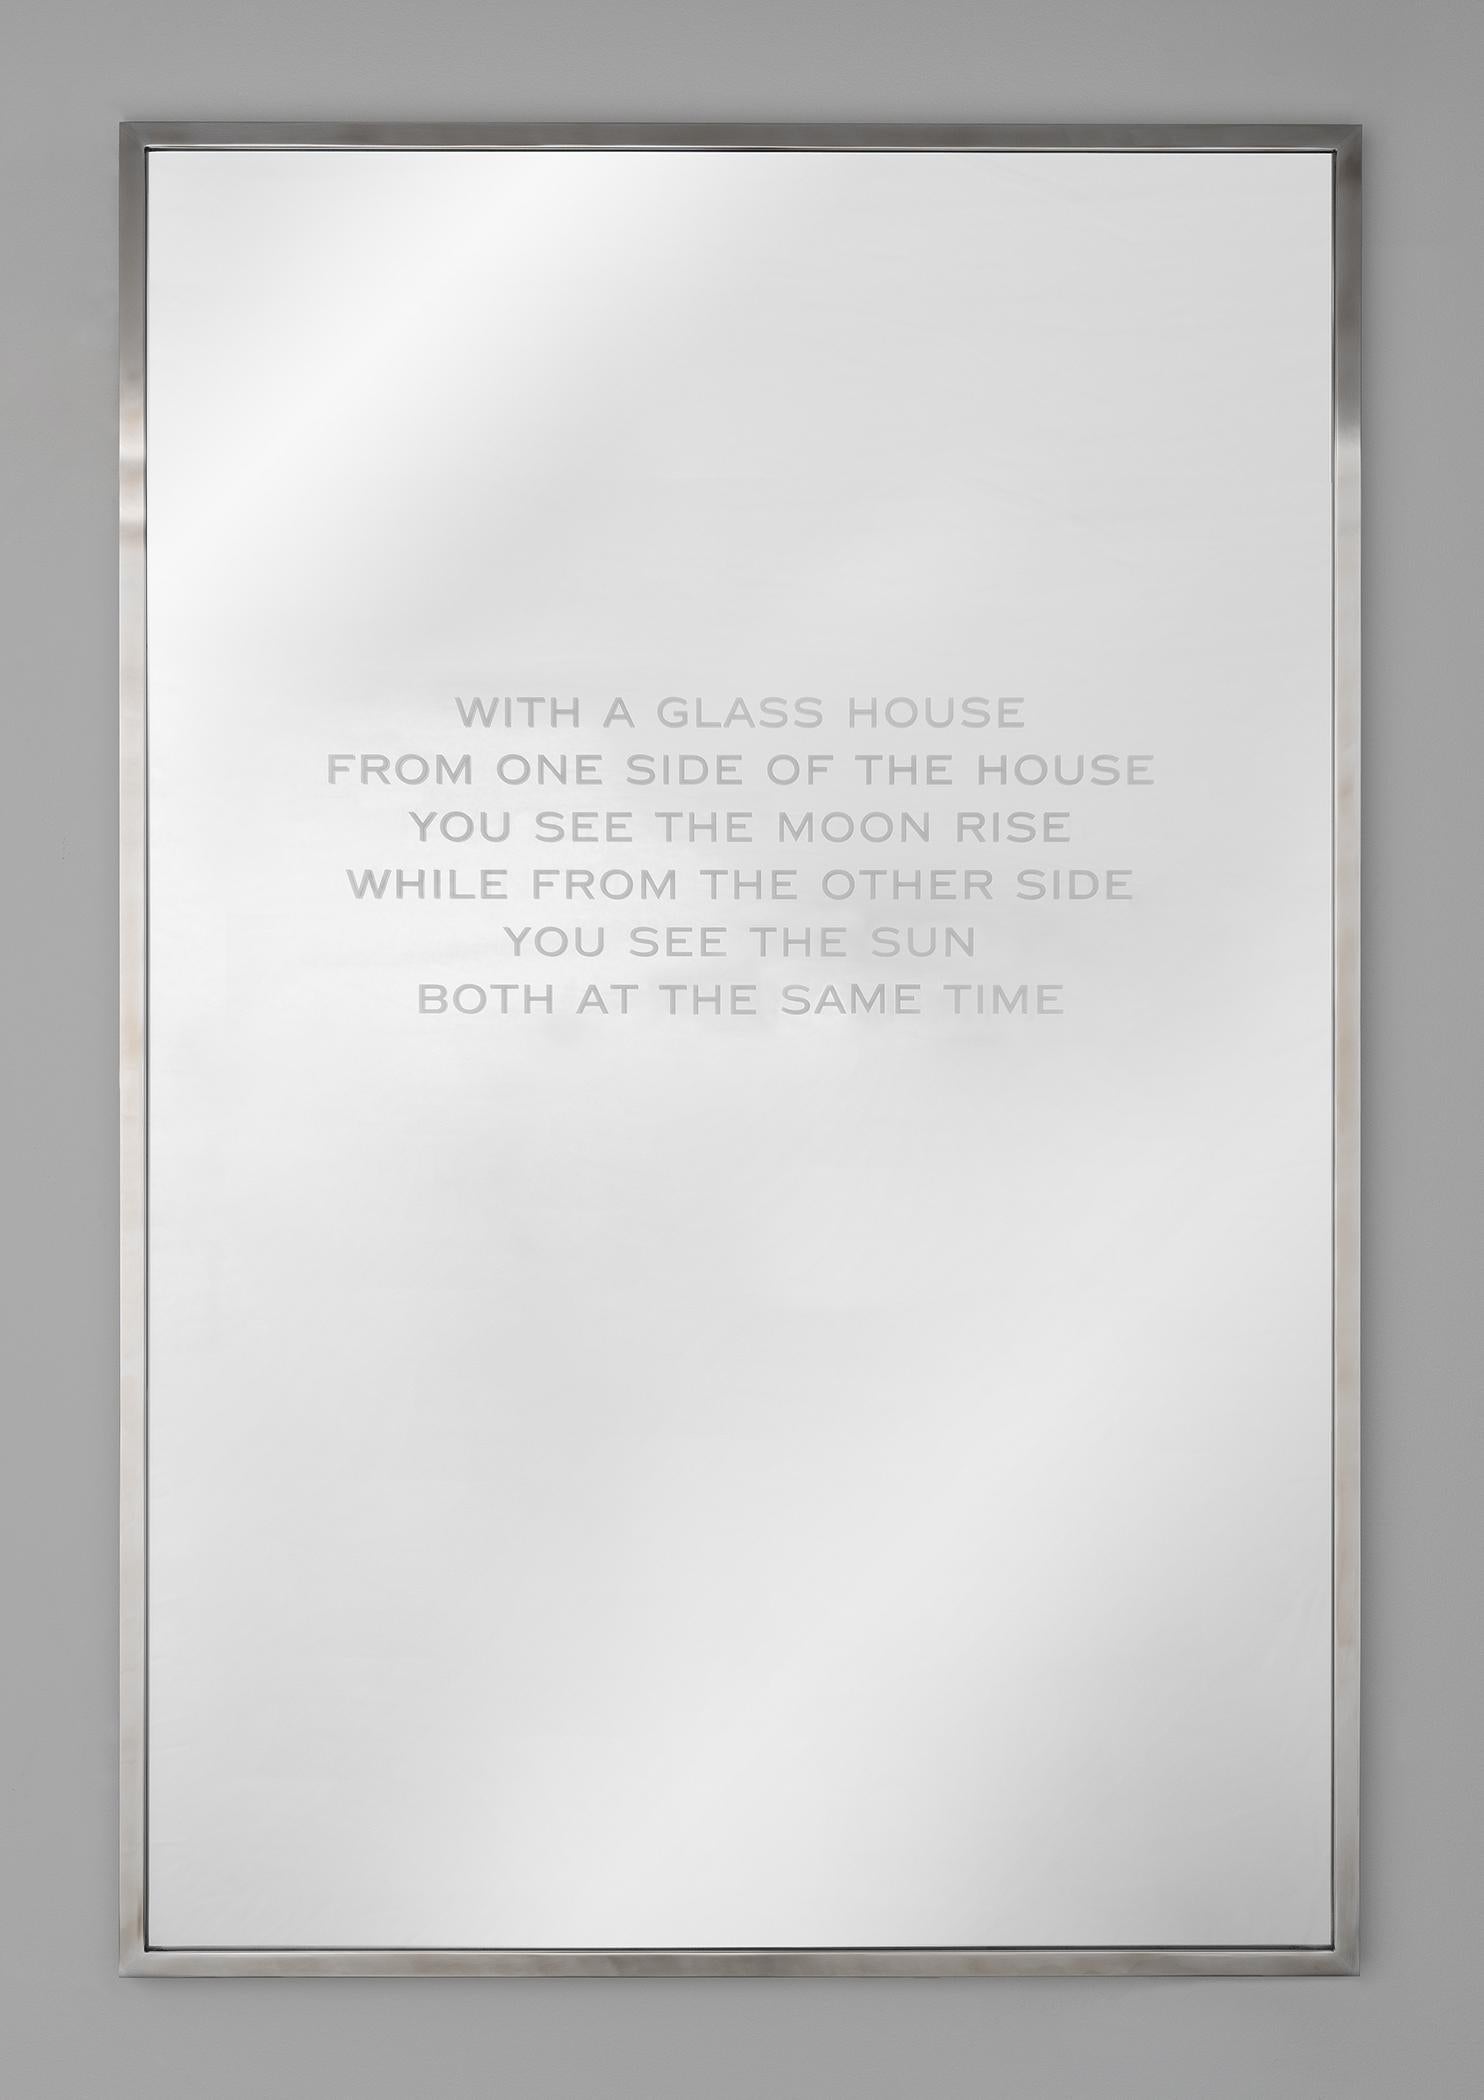 Jenny Holzer
In einem Glashaus, 2018
Spiegel aus geätztem Glas
36 x 24 Zoll
Auflage von 15, 5 AP's
Gestempelt und nummeriert
Text aus Philip Johnson: The Architect in His Own Words von Hilary Lewis und John O'Connor 1994. Verwendung mit Genehmigung.